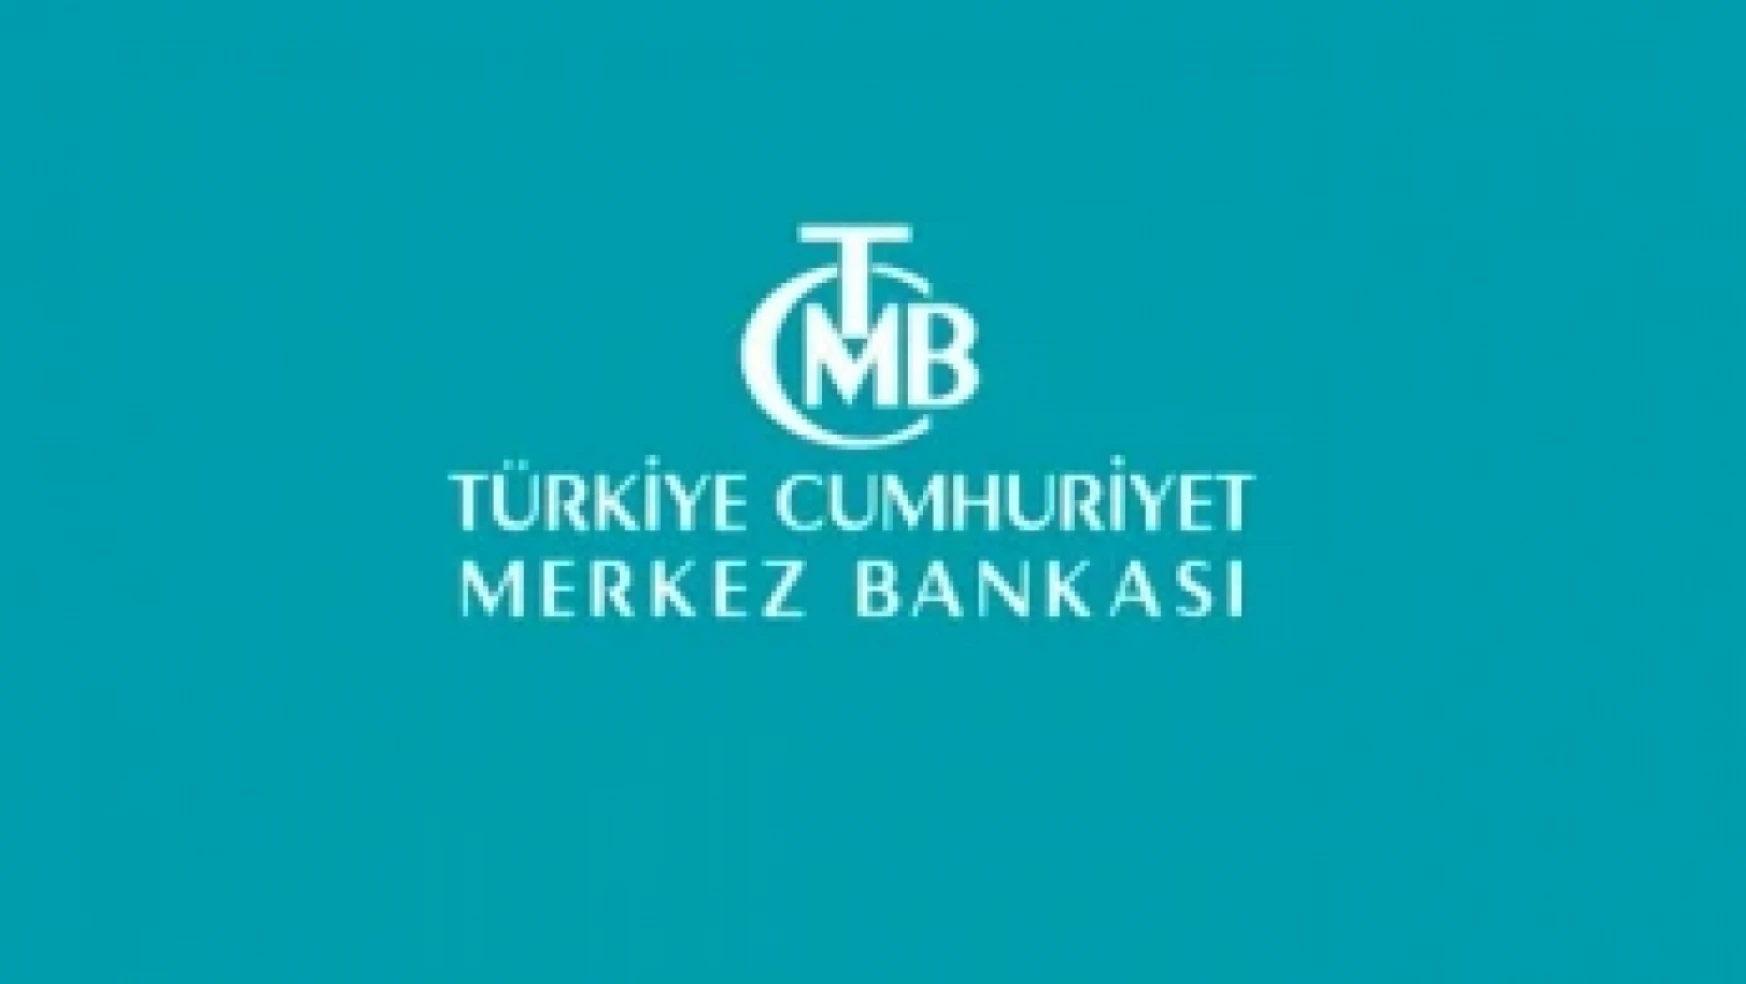 Türkiye Cumhuriyet Merkez Bankasından sadeleştirme hamlesi